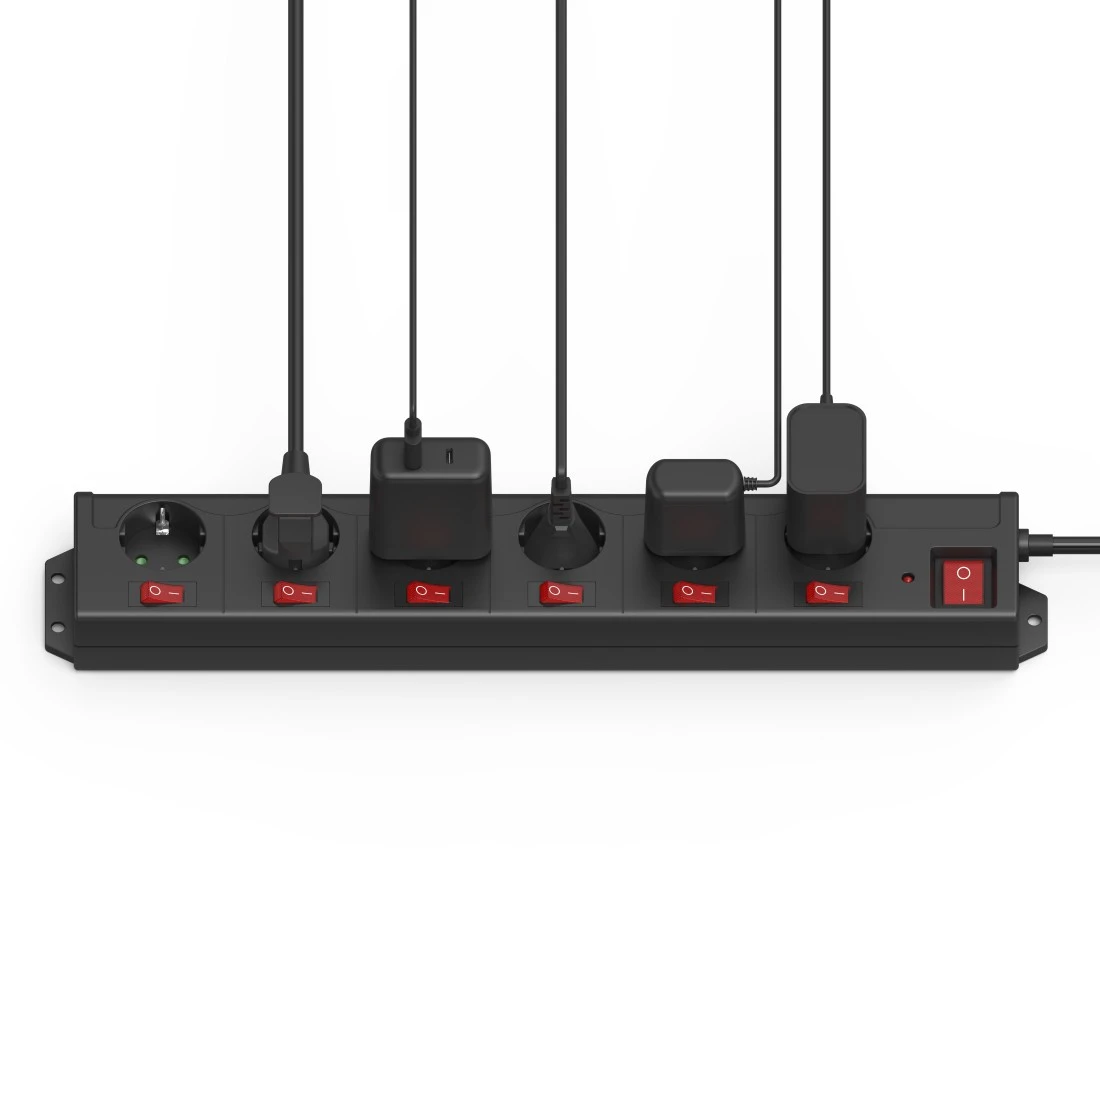 Regleta 6+1, XL, 6 tomas, con interruptores individuales, negro